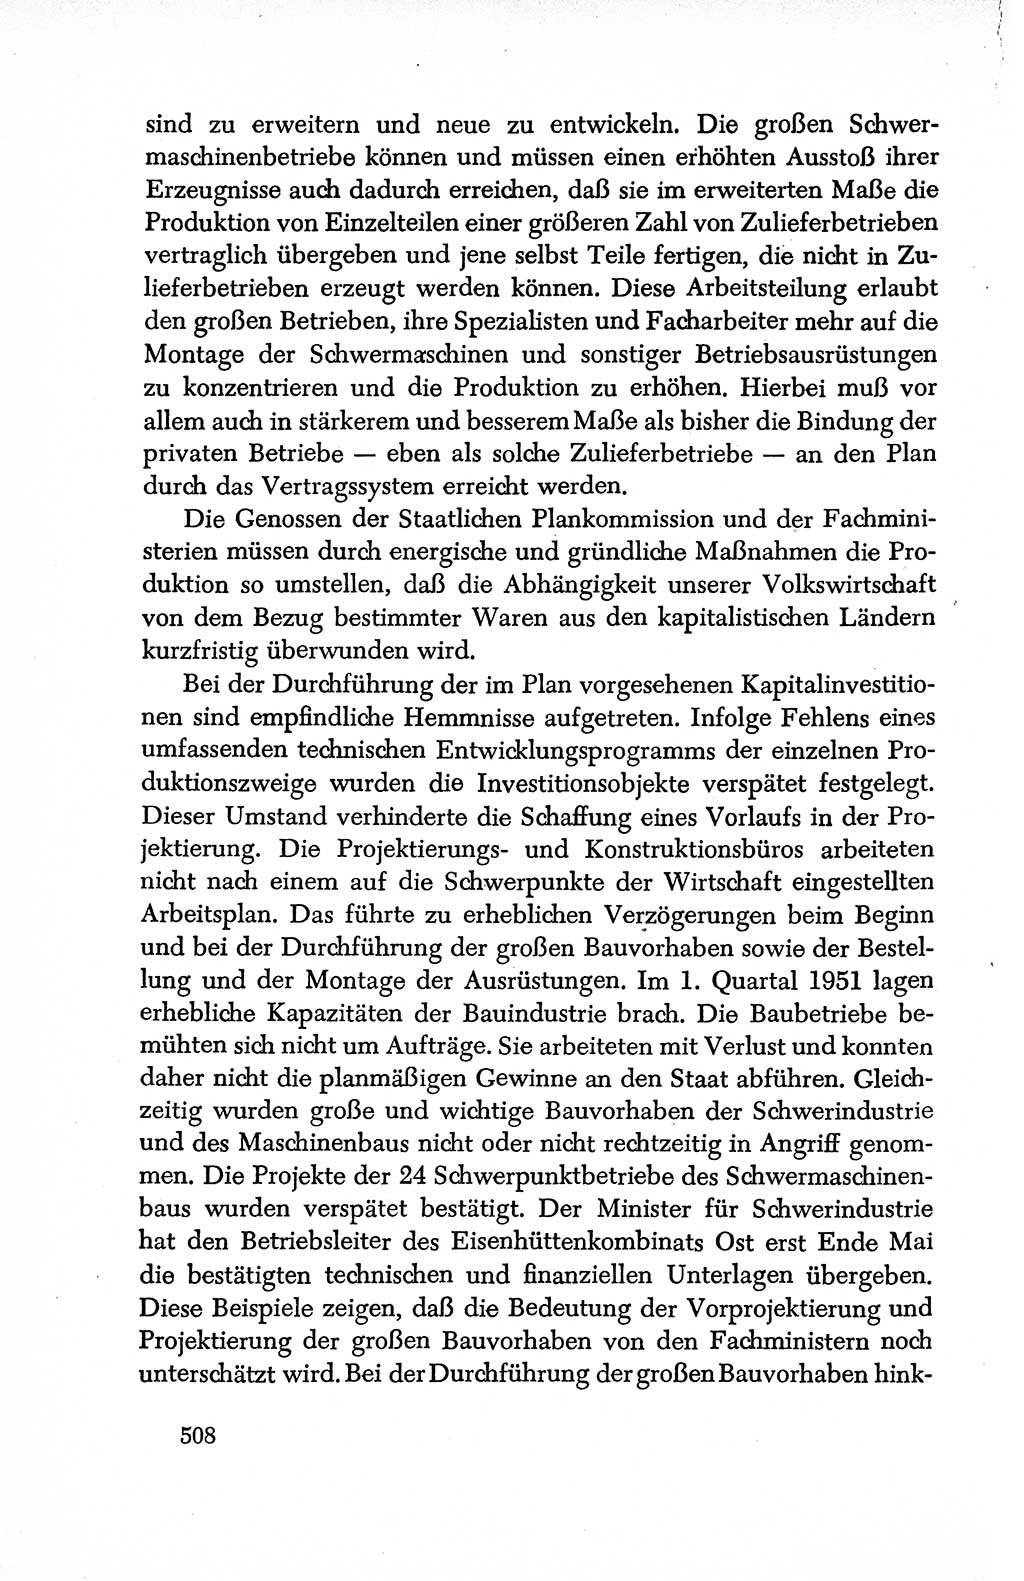 Dokumente der Sozialistischen Einheitspartei Deutschlands (SED) [Deutsche Demokratische Republik (DDR)] 1950-1952, Seite 508 (Dok. SED DDR 1950-1952, S. 508)